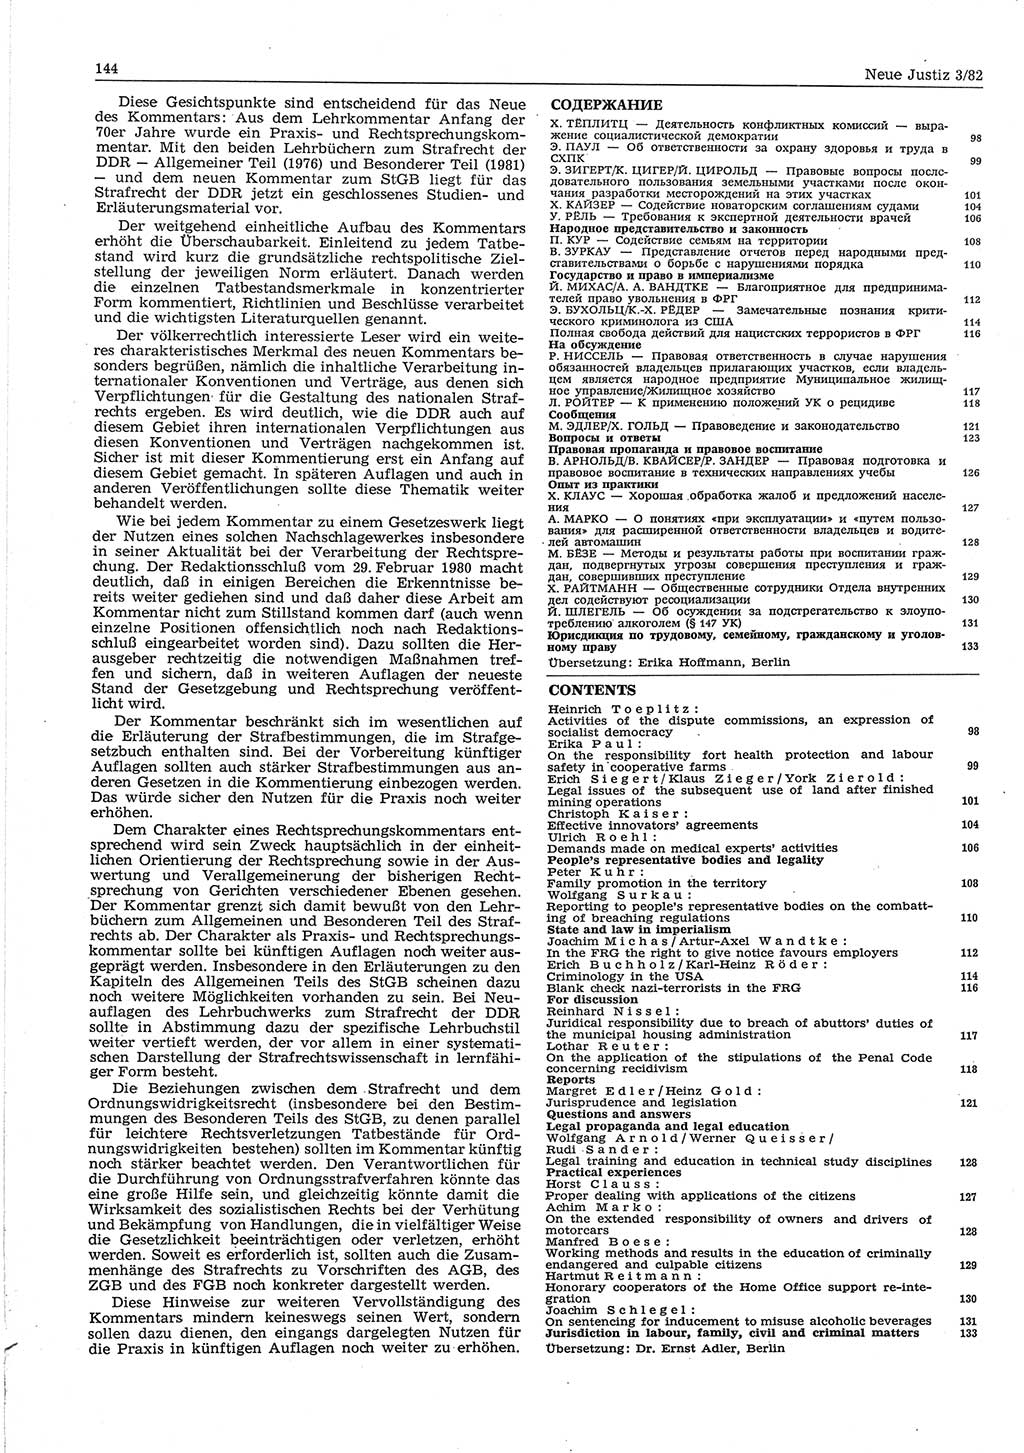 Neue Justiz (NJ), Zeitschrift für sozialistisches Recht und Gesetzlichkeit [Deutsche Demokratische Republik (DDR)], 36. Jahrgang 1982, Seite 144 (NJ DDR 1982, S. 144)